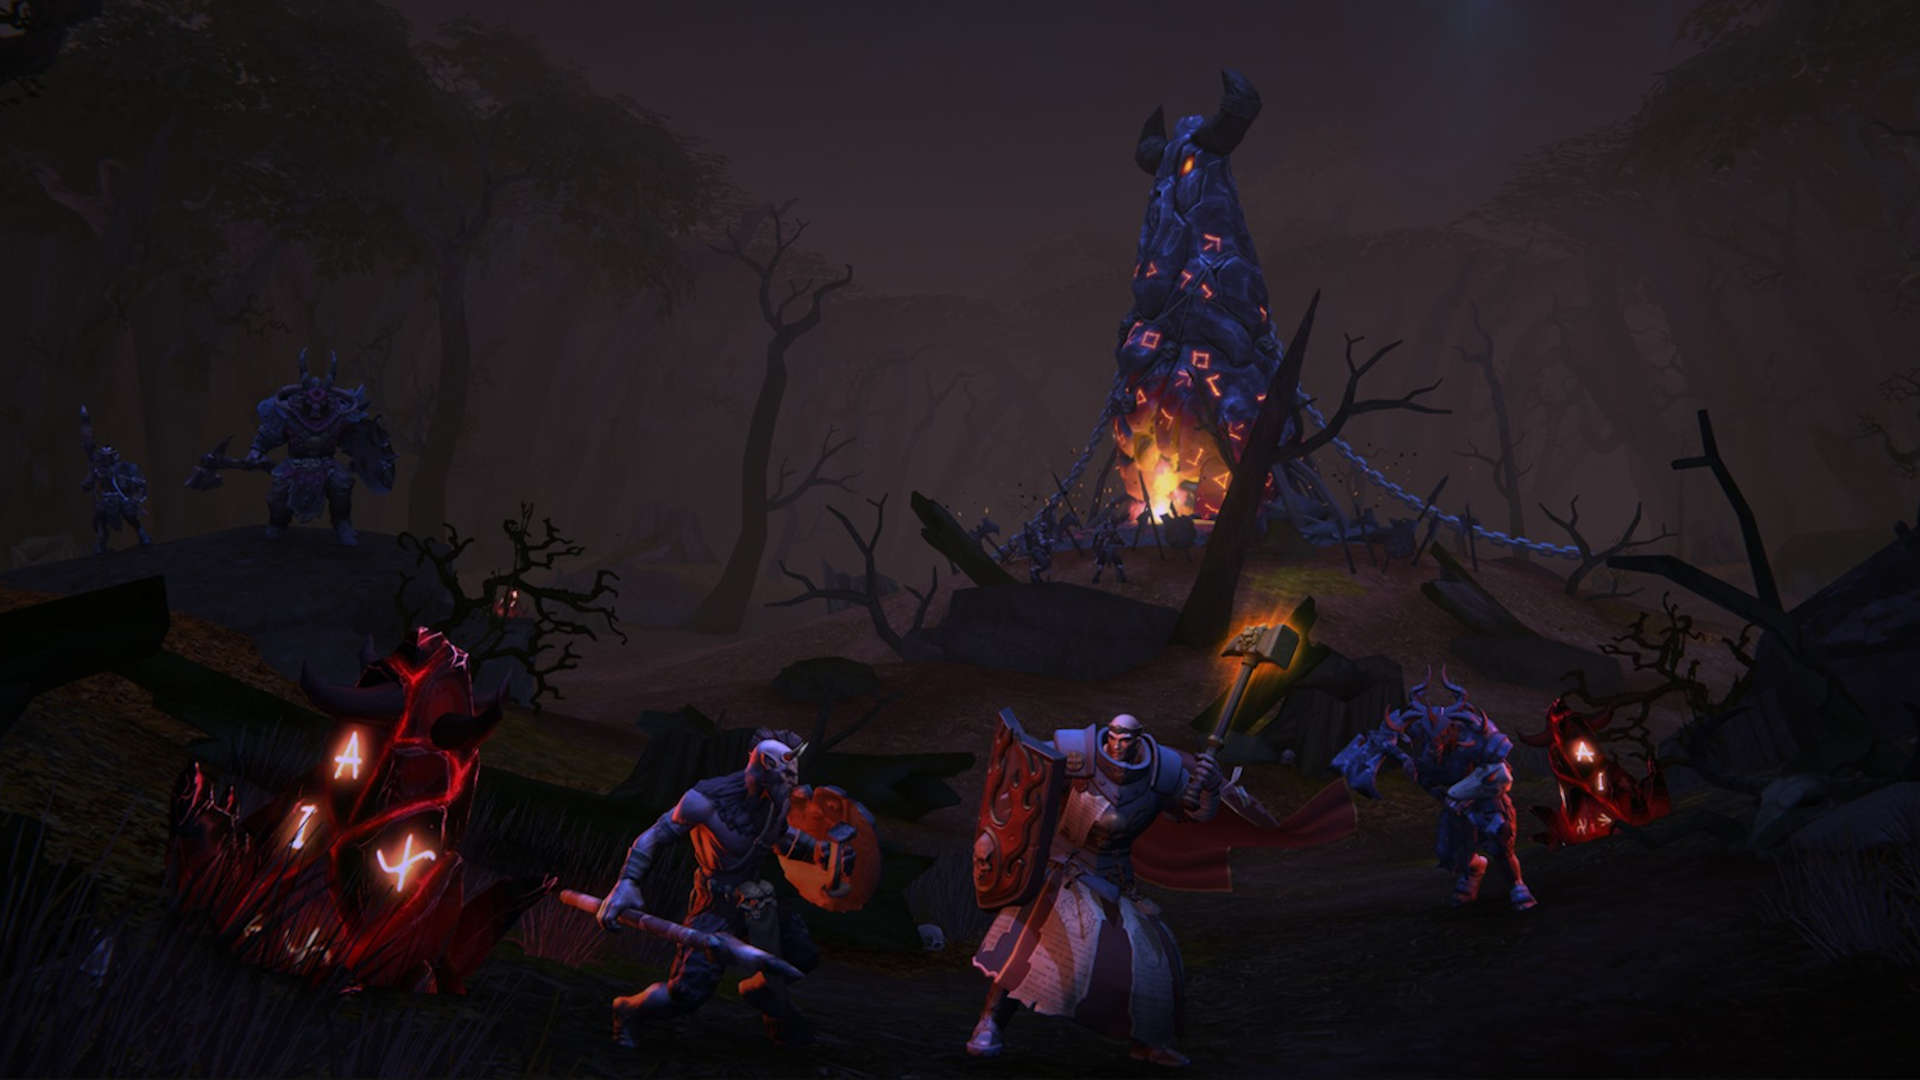 En iyi mobil mmorpgs: Warhammer Odyssey. Resim, bir çekiç ve kalkanla düşmanlarla savaşan bir savaşçı rahip gösterir